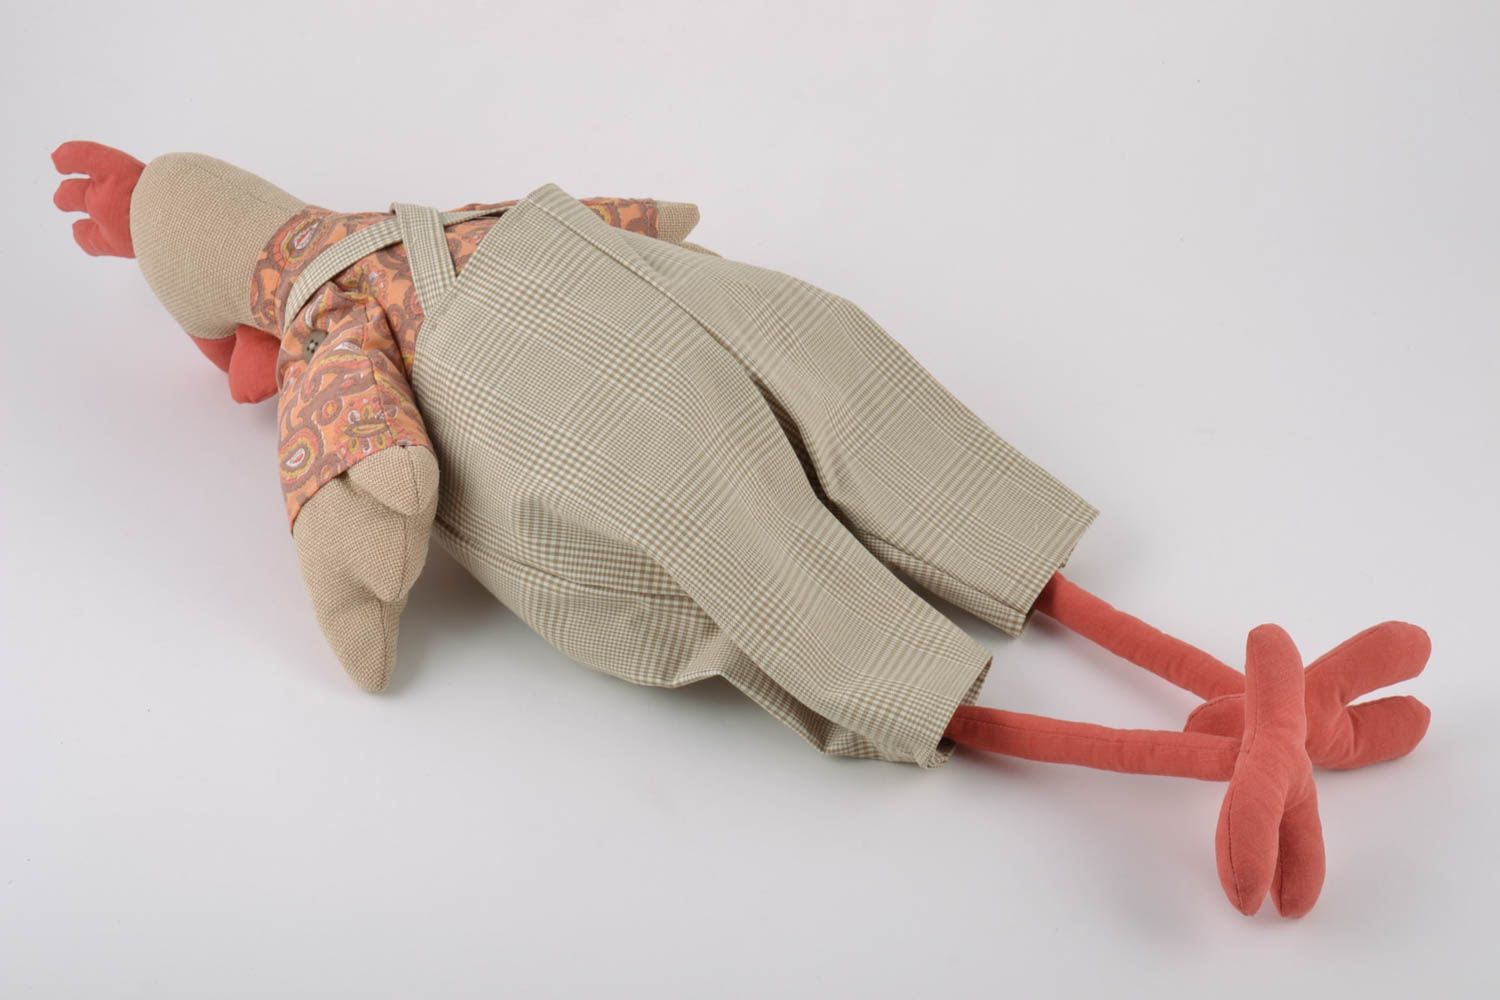 Текстильная игрушка в виде петуха ручной работы из льна оригинальная для ребенка фото 5